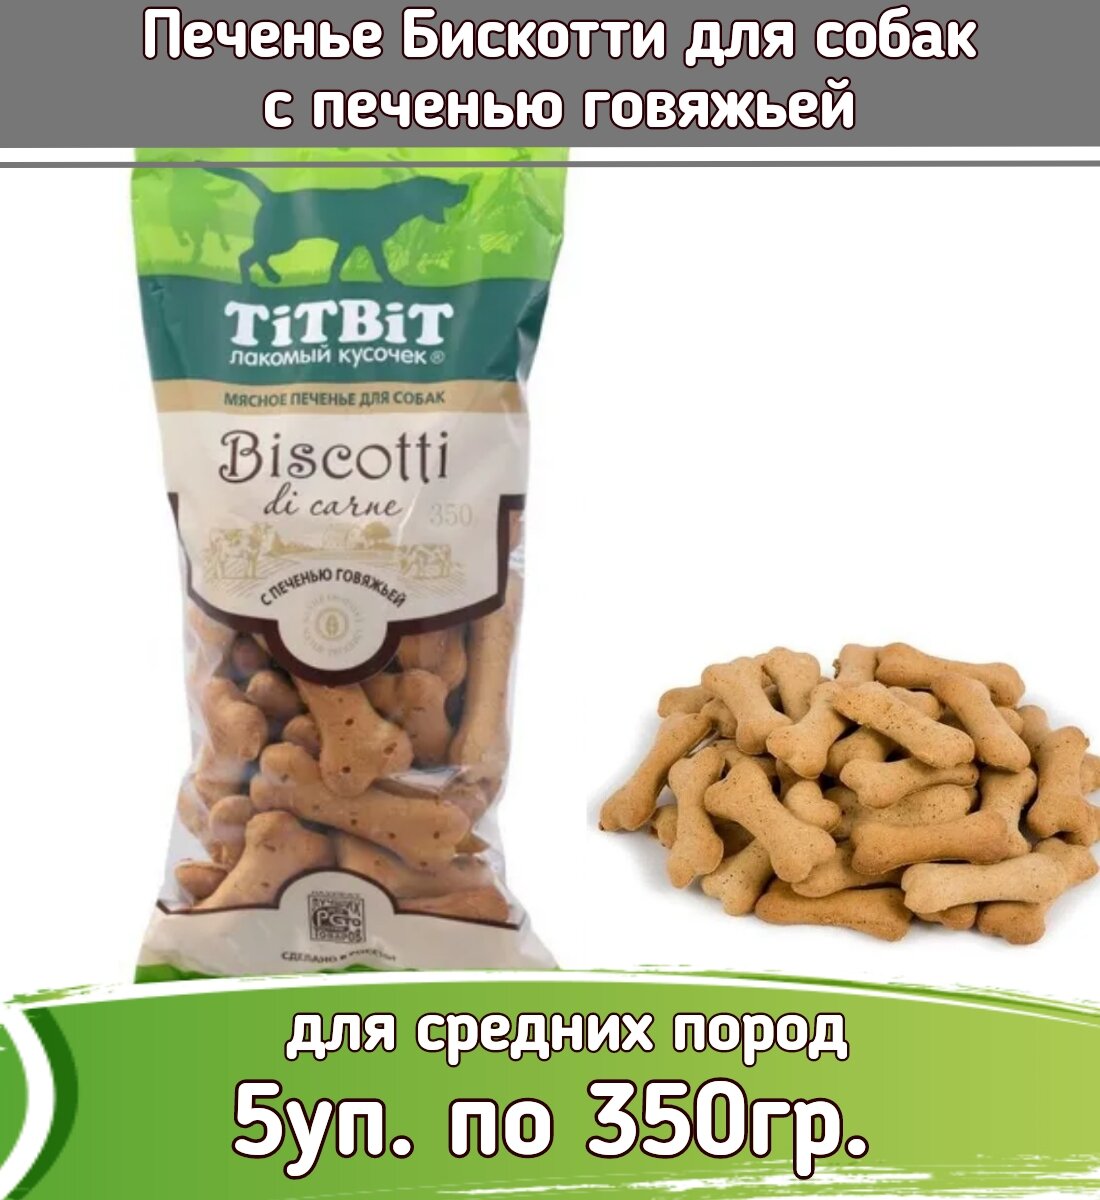 TiTBiT 5шт х 350г лакомство печенье Бискотти с печенью говяжьей для собак